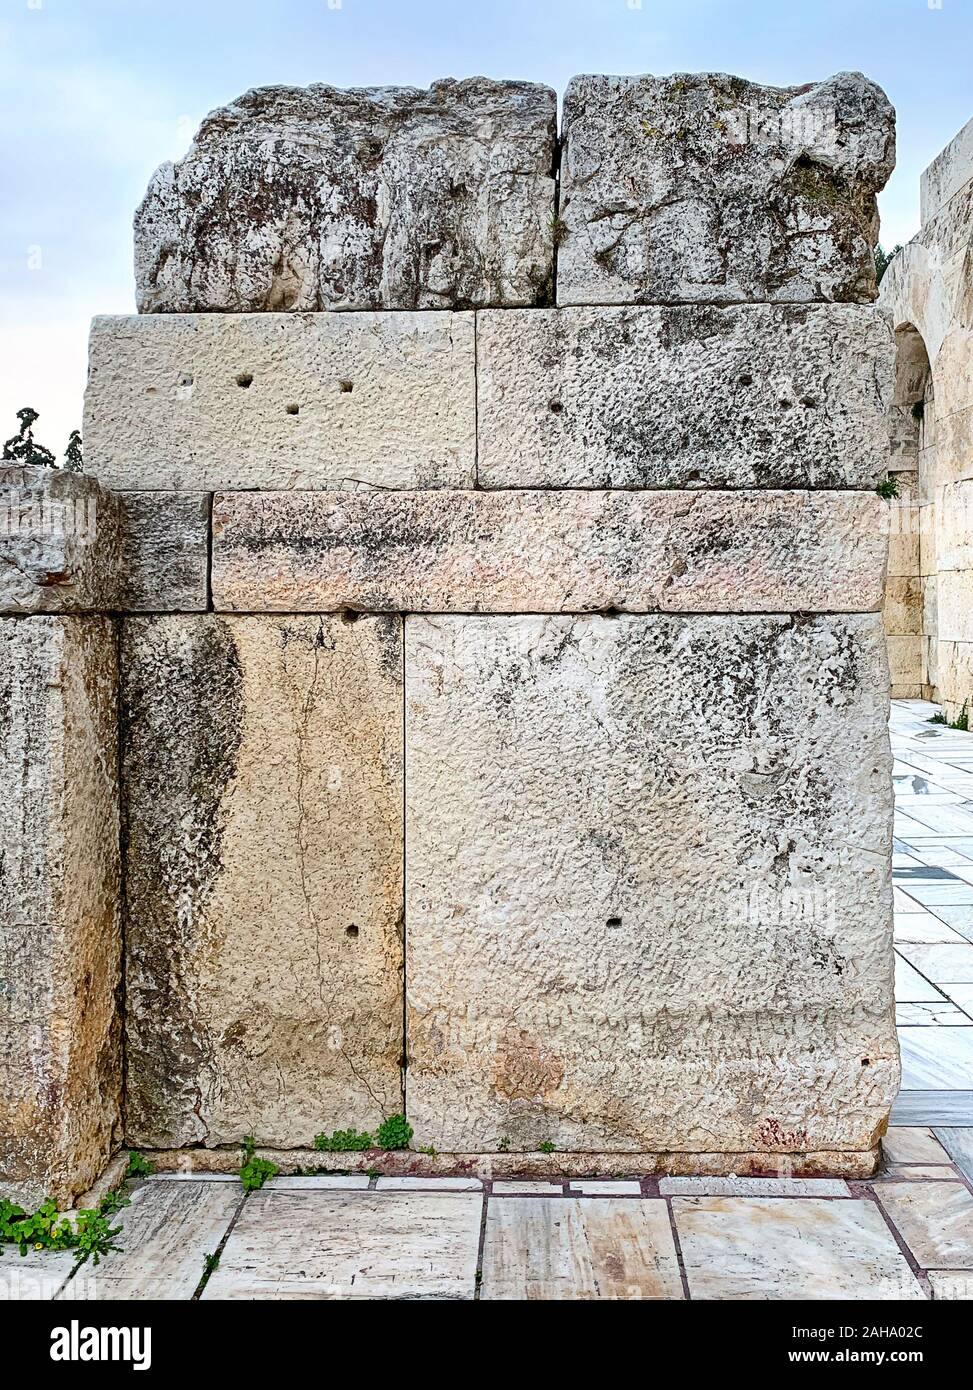 Antico muro di pietra dell'Acropoli di Atene, Attica Regione in Grecia. Antichi enormi blocchi di pietra impilati fino a formare una parete. Foto. Foto Stock